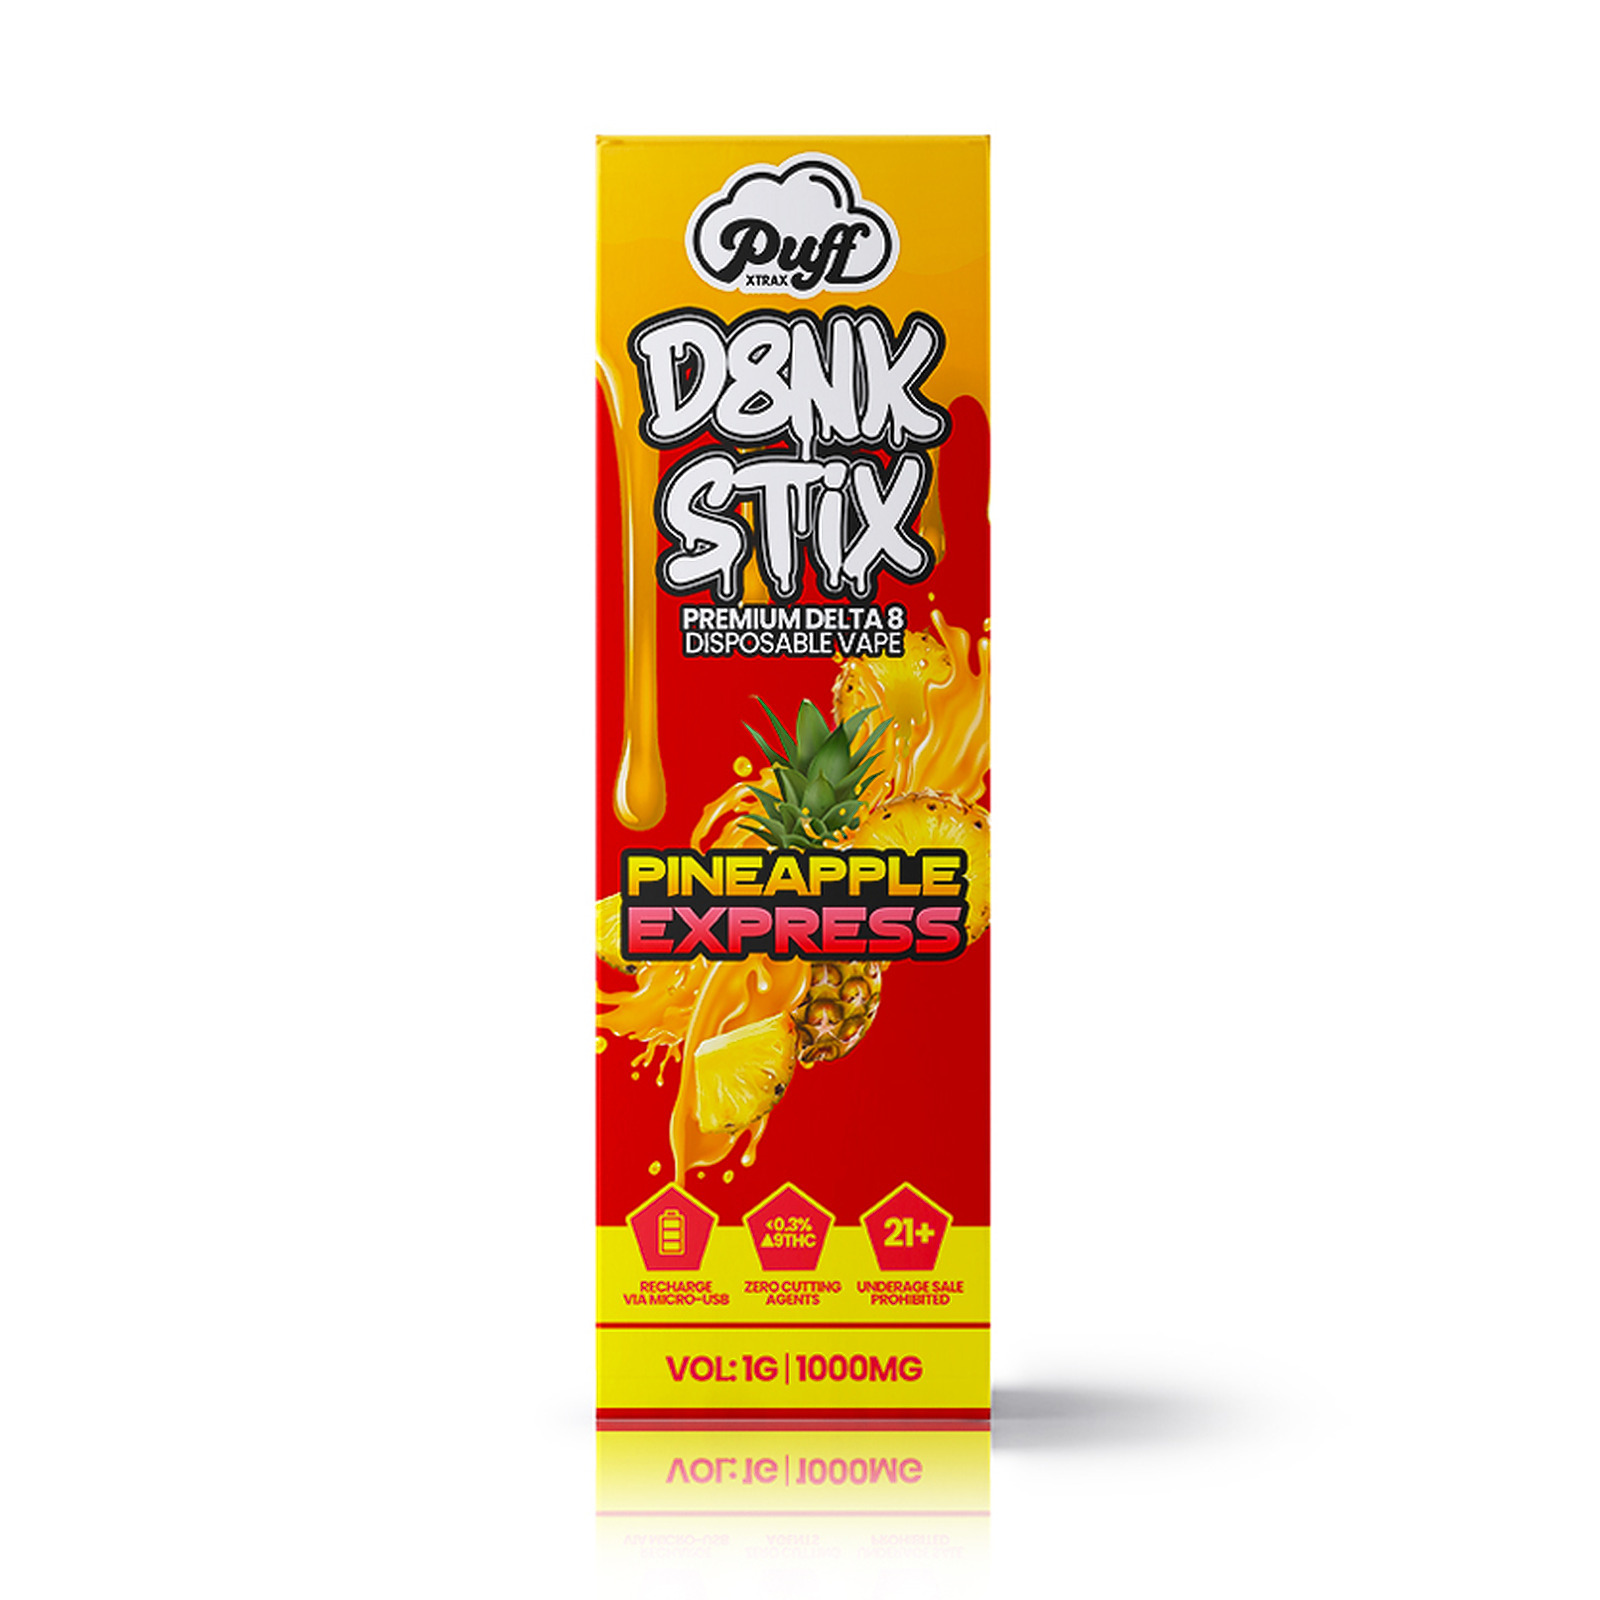 PUFF XTRAX | Delta-8 Dank Stix Disposable Vape: Pineapple Express